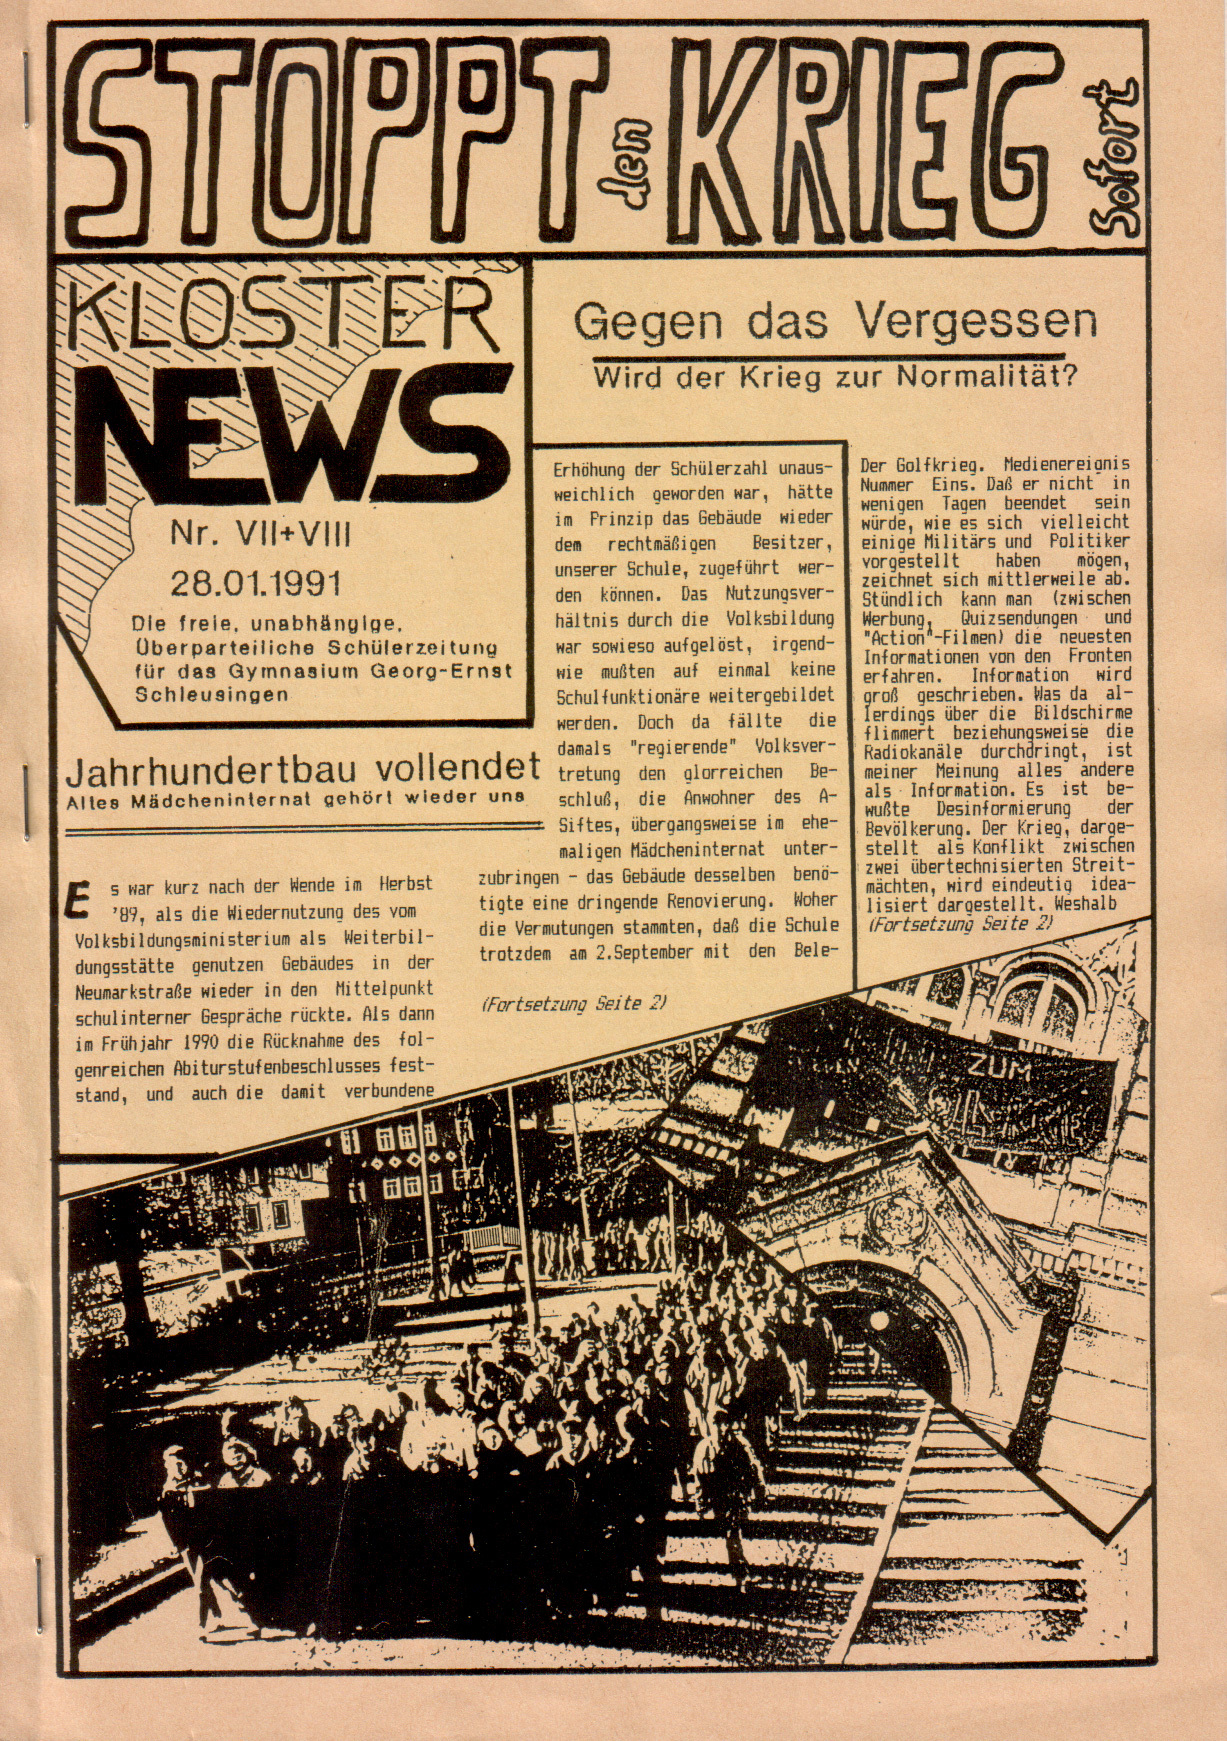 KlosterNews, Ausgabe VII/VIII, 28.01.1991, Bild: Titelseite